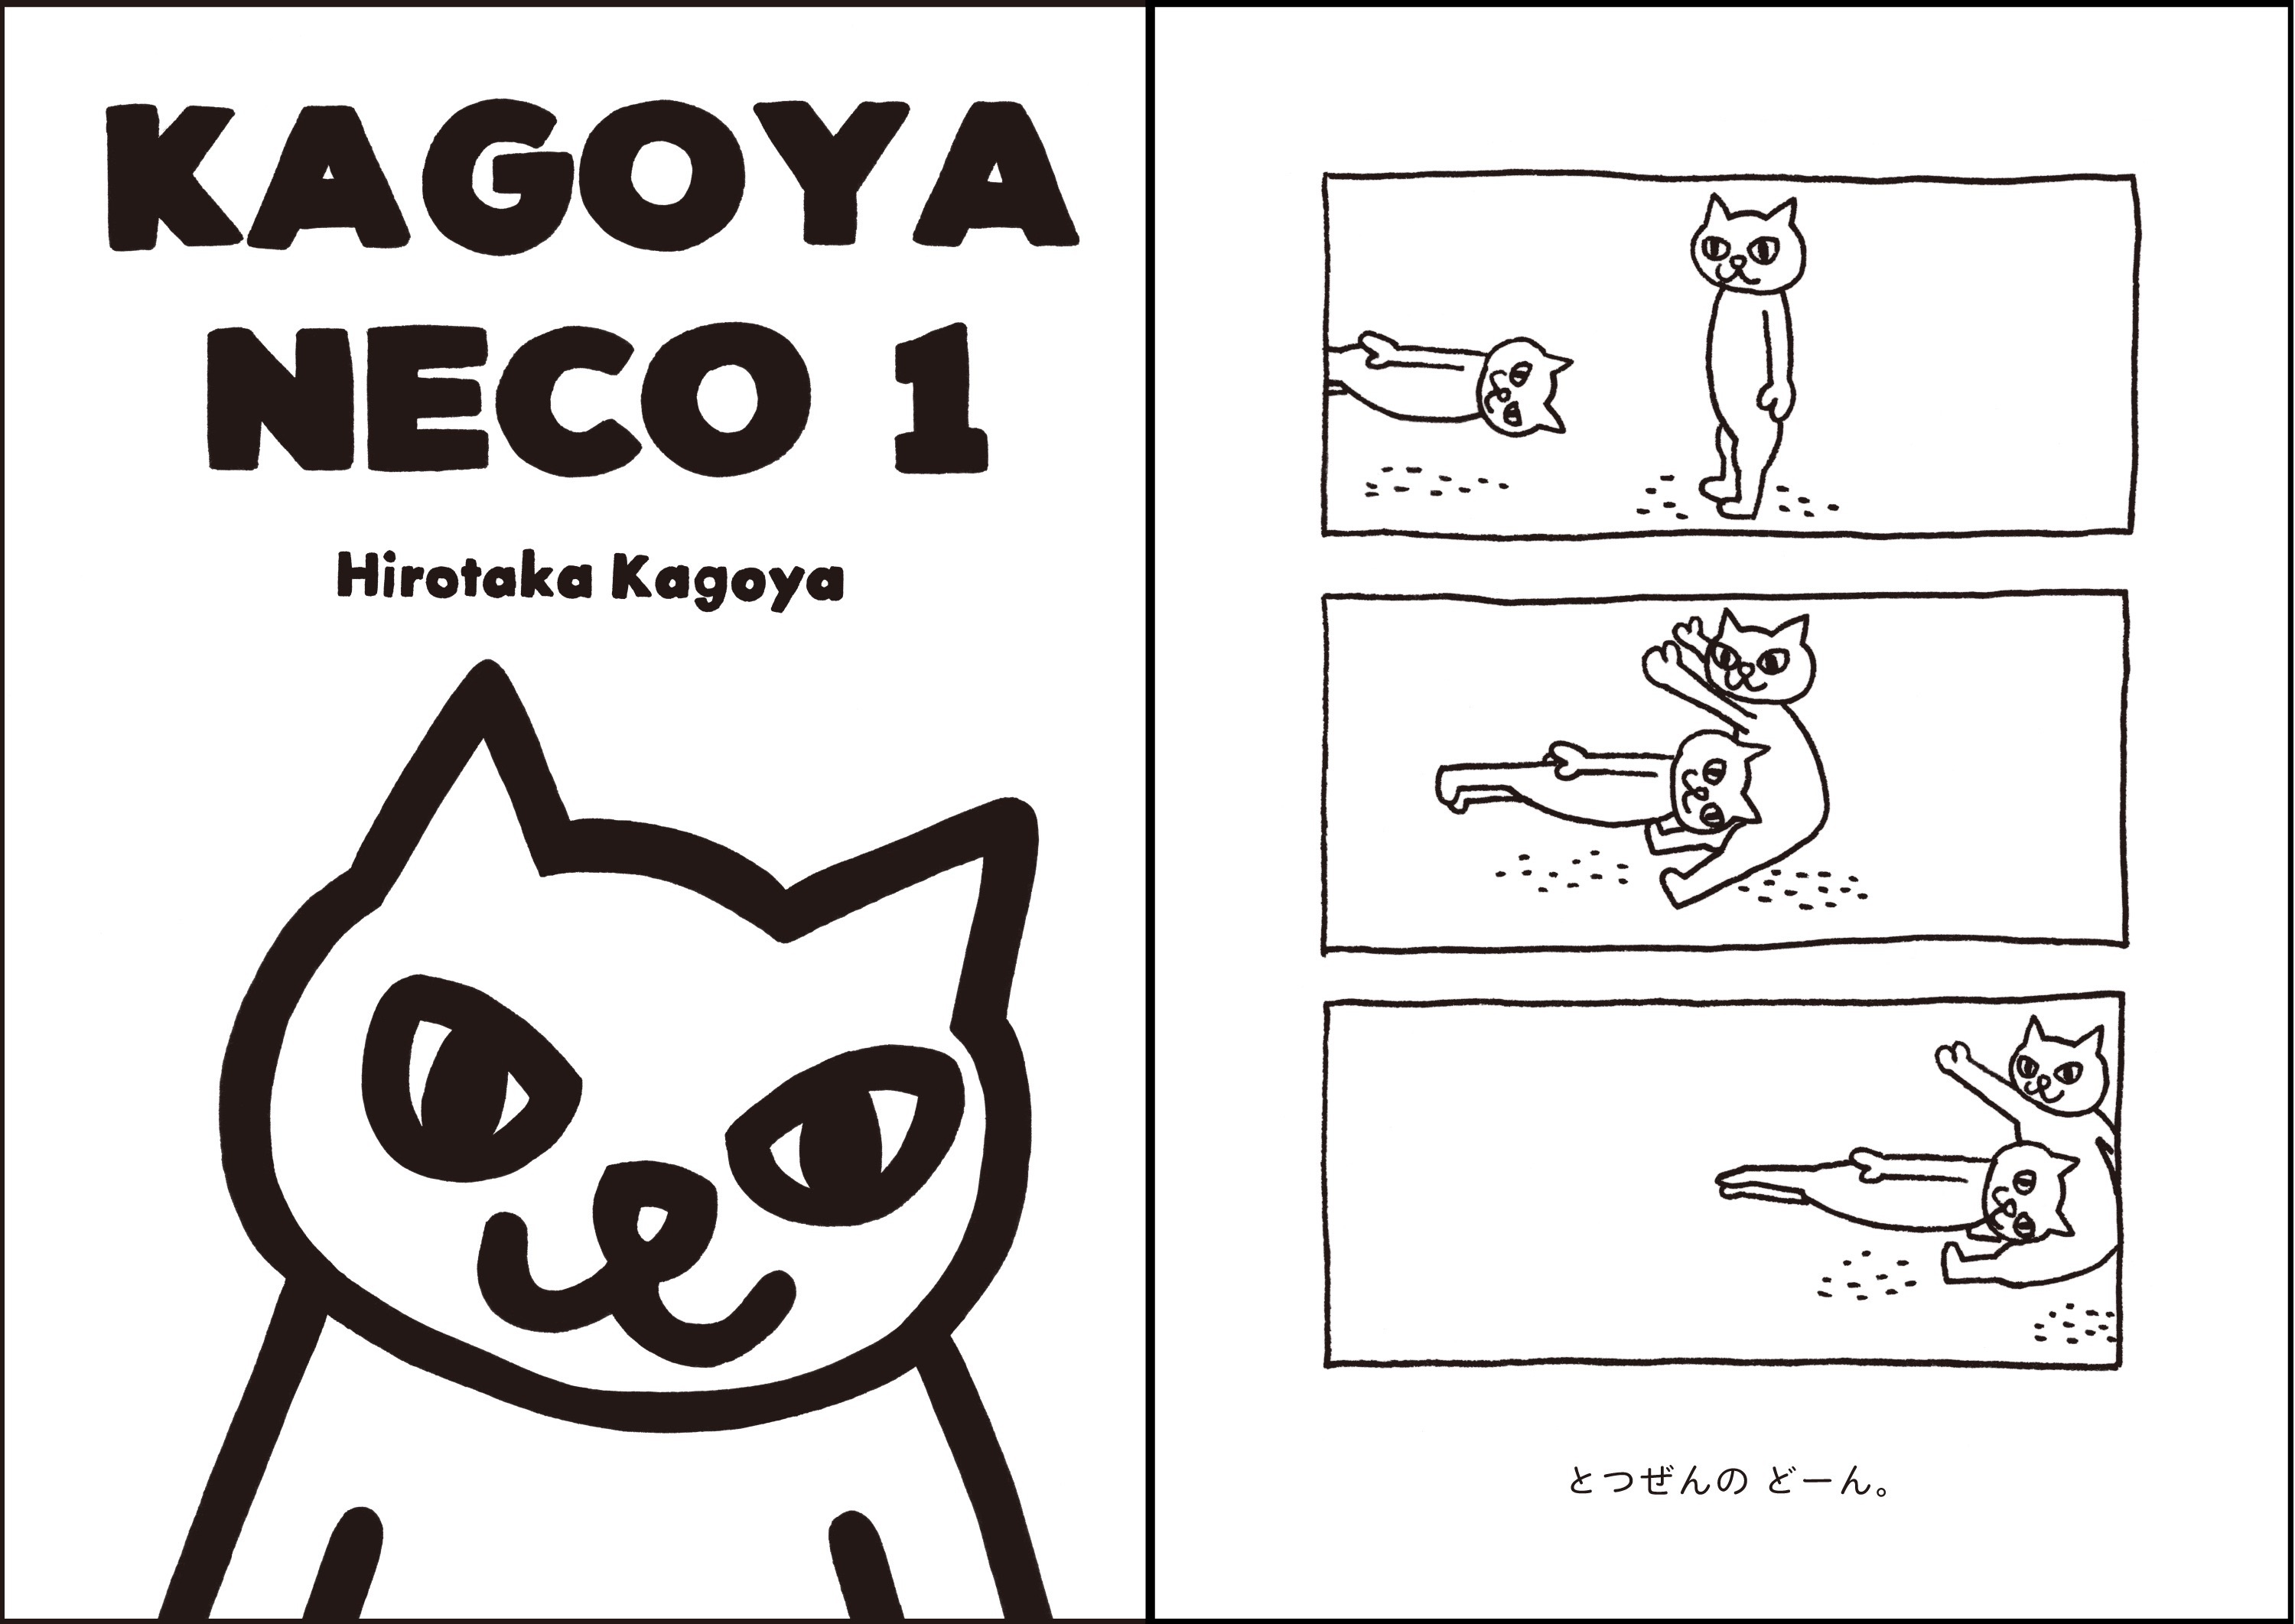 シュールなねこの3コマを描く Kagoya Neco 1 17年4月30日にamazon Co Jp限定で予約販売開始 株式会社ショーケースのプレスリリース